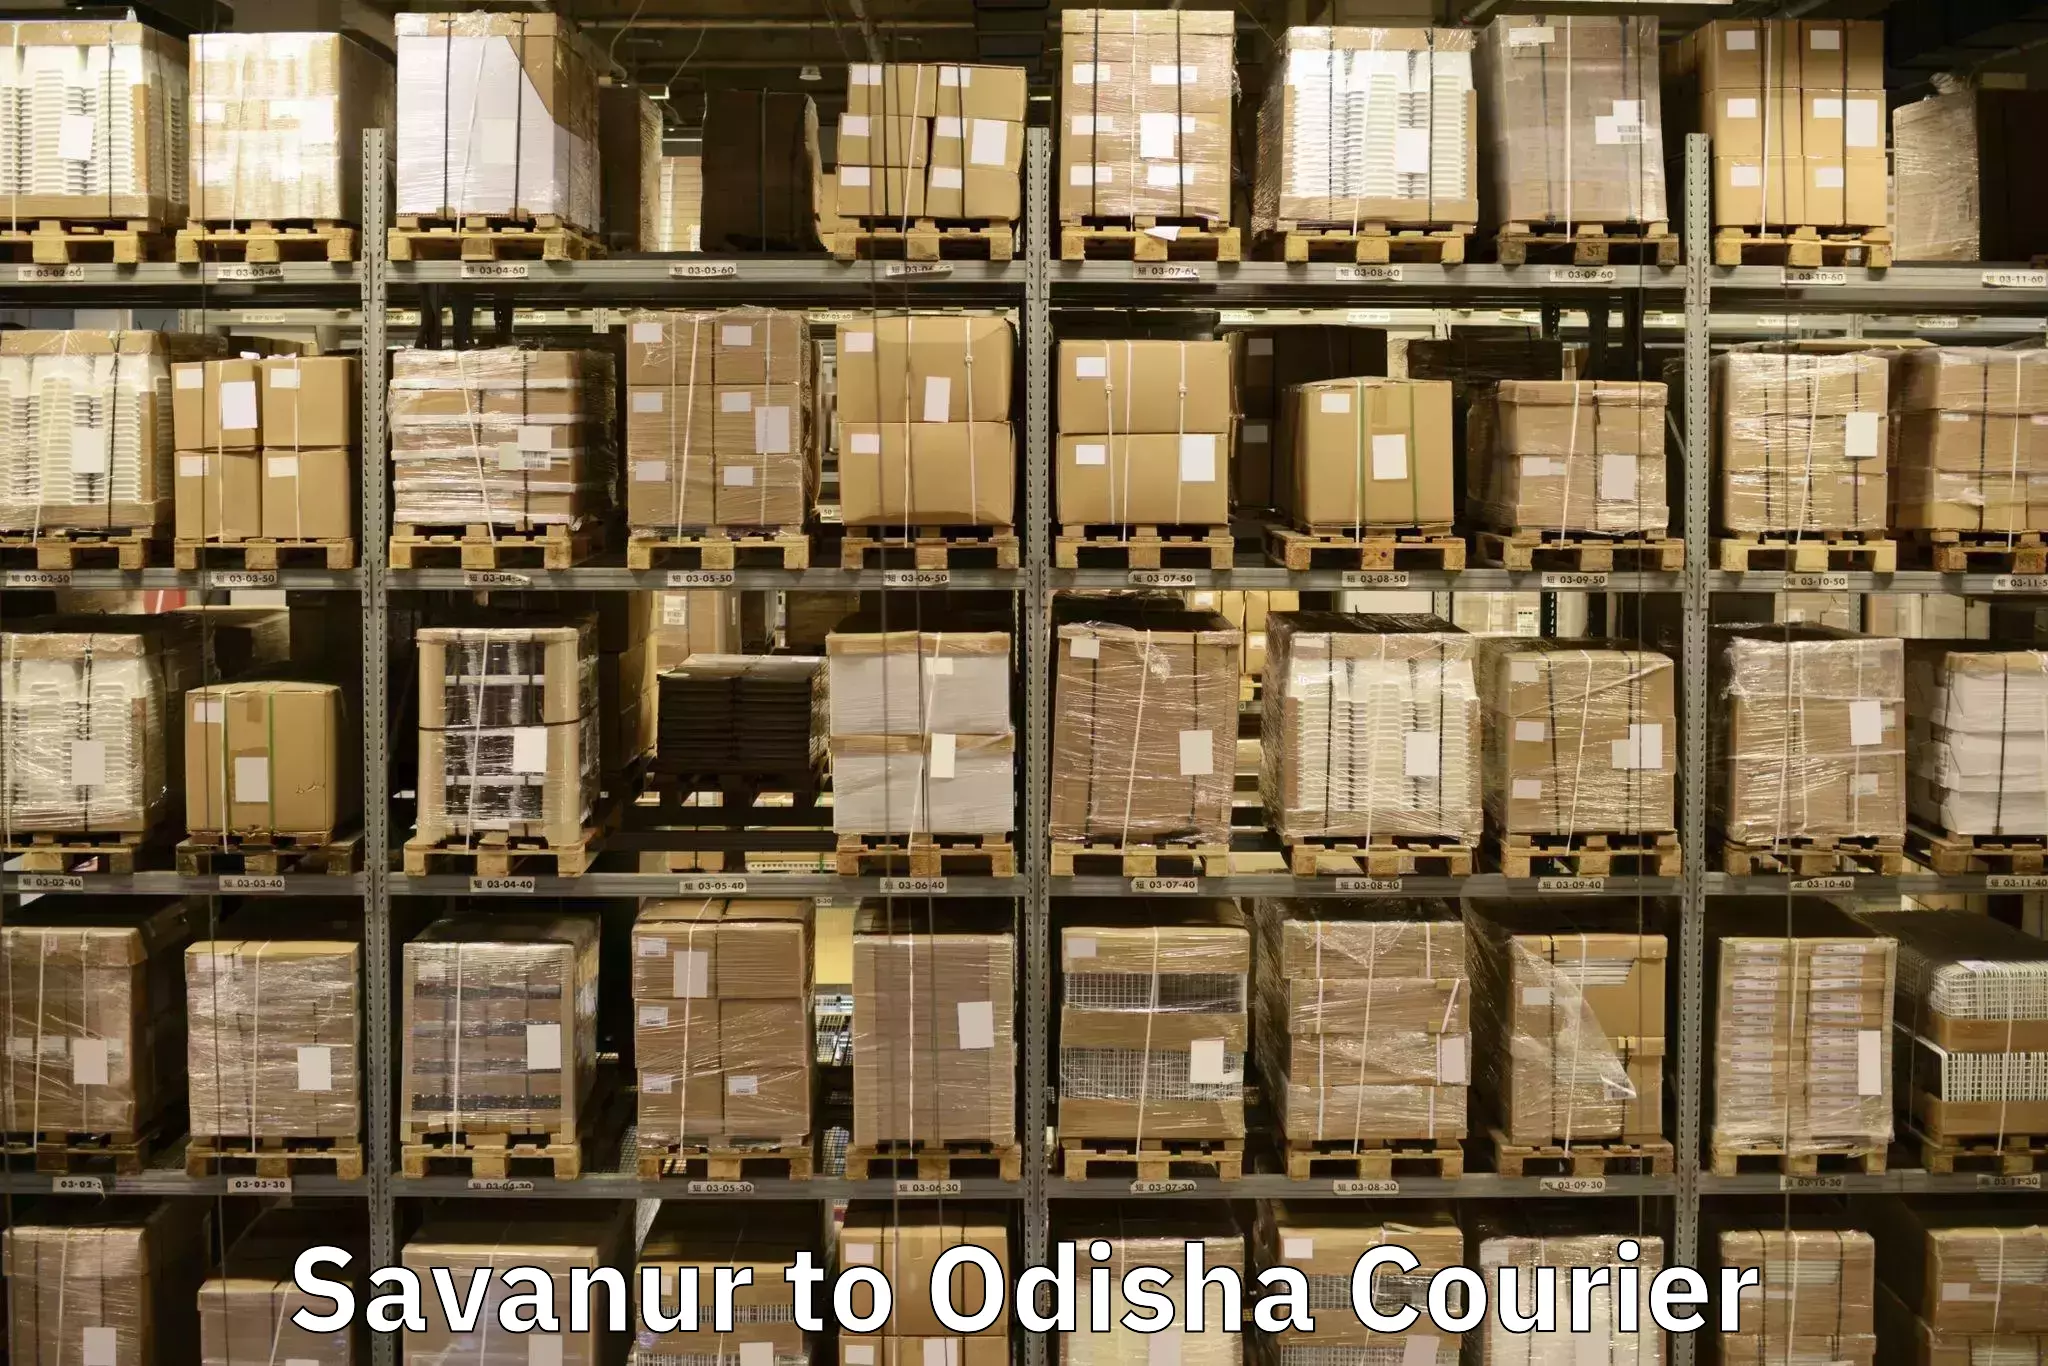 Furniture moving experts Savanur to Tihidi